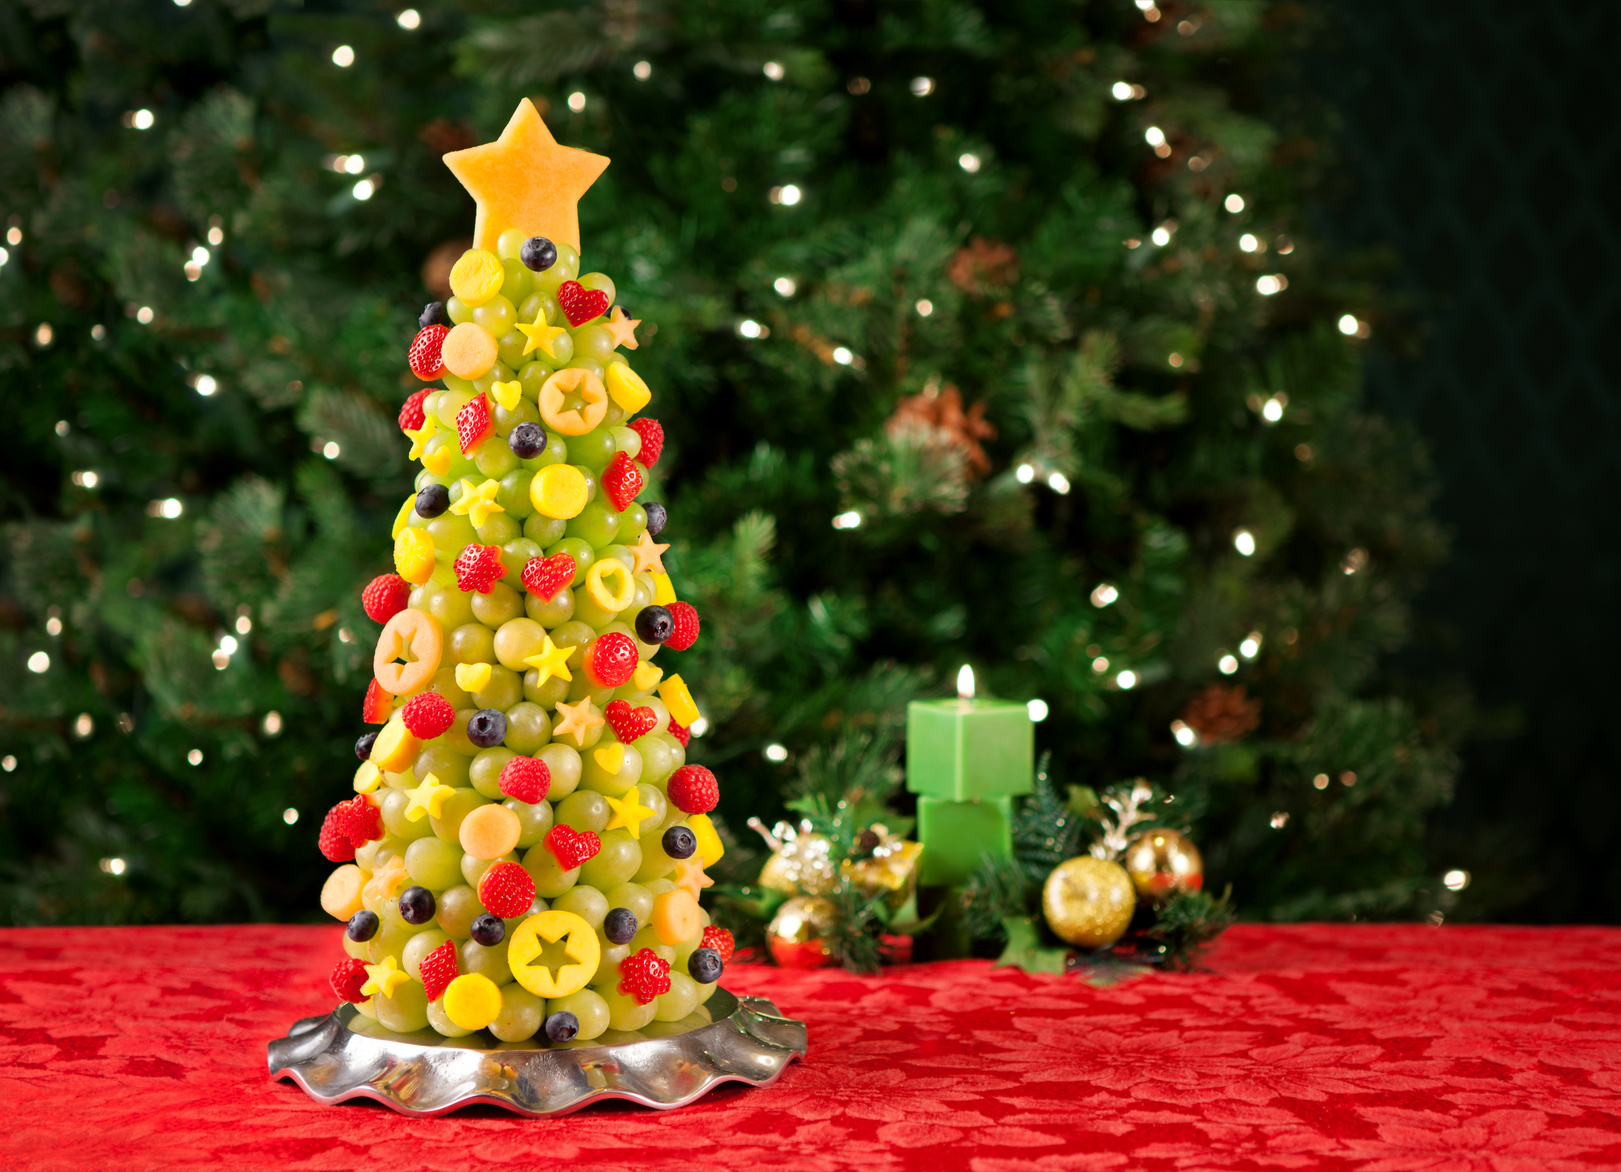 Fruit Christmas tree